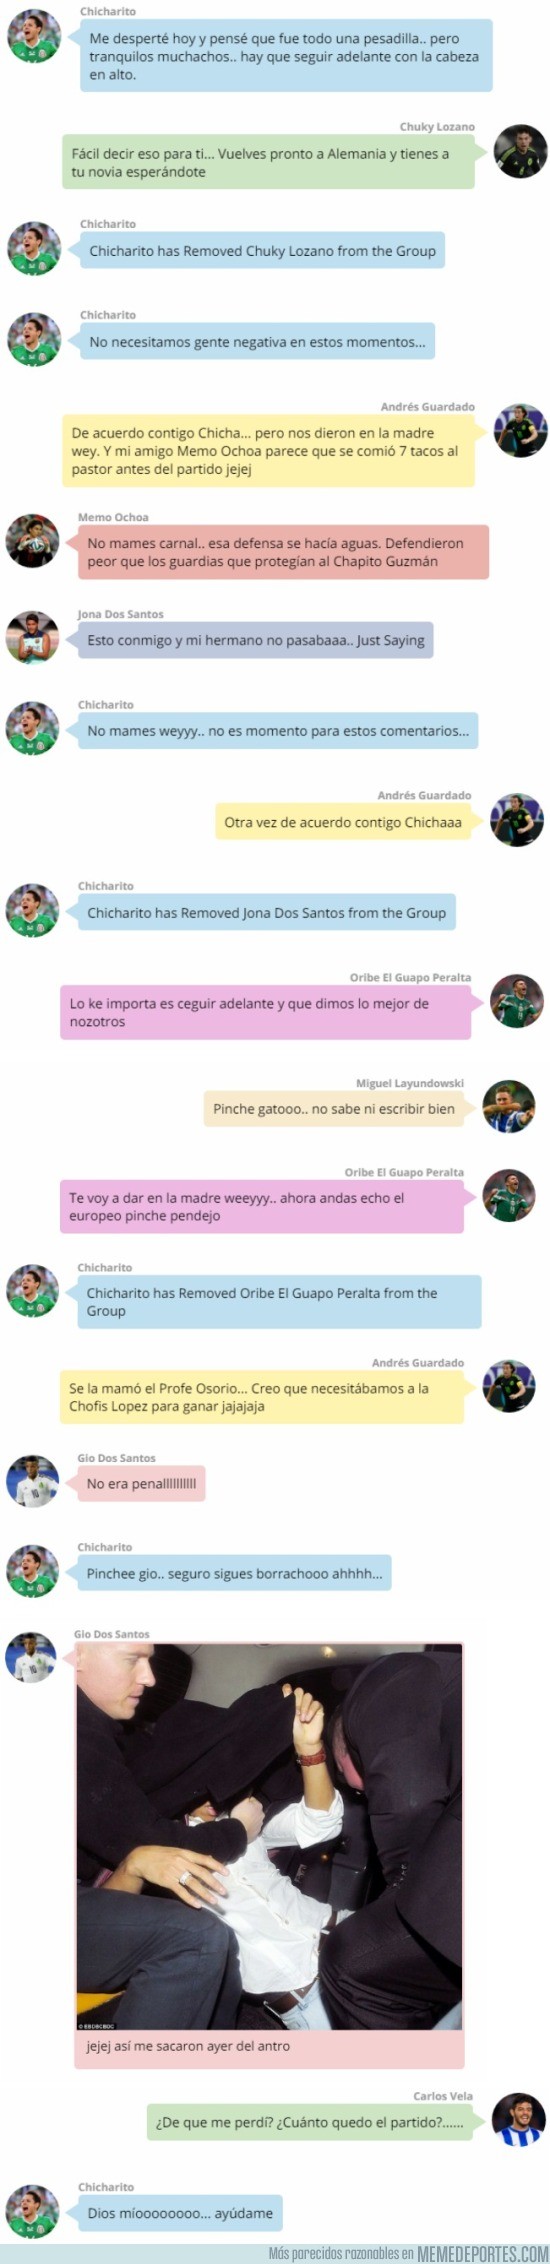 877881 - NO MAMEN: La 'conversación' en Whatsapp de los jugadores de México tras la derrota ante Chile